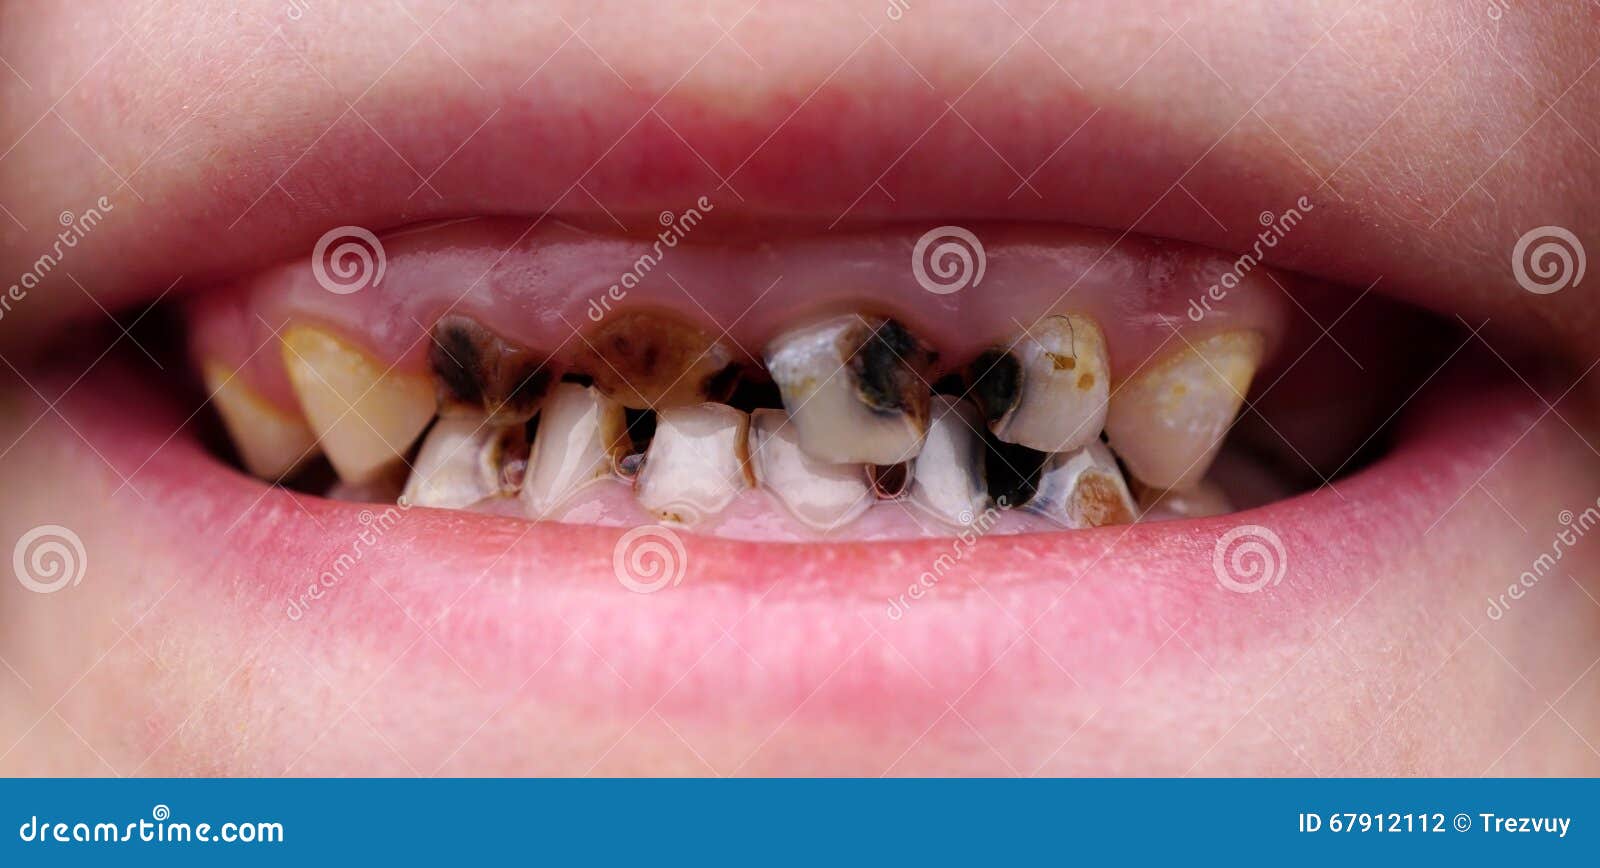 Костоеда на зубах ребенка